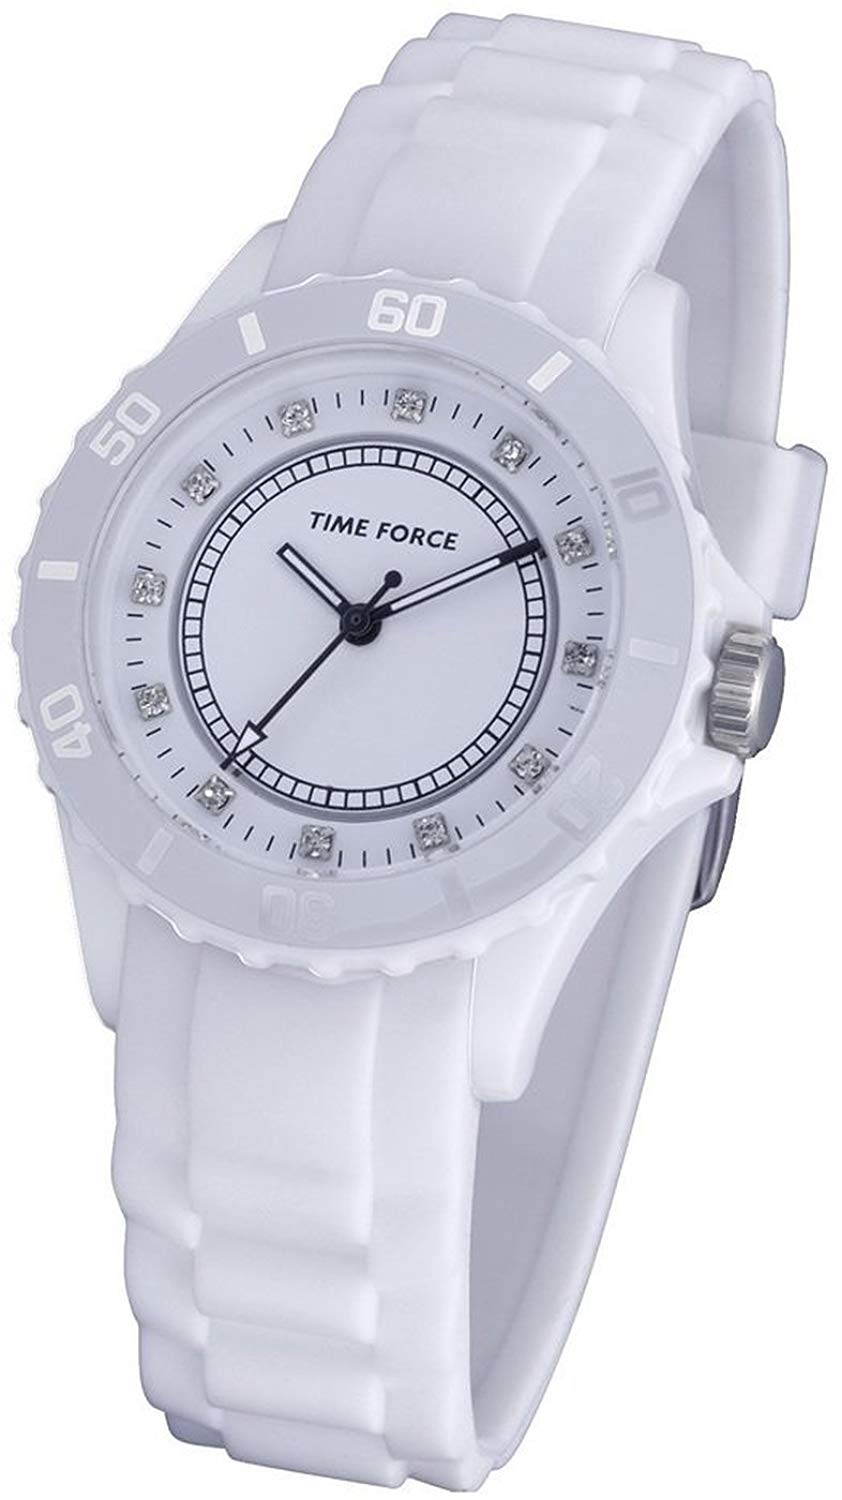 خرید ساعت مچی تایم فورس دخترانه زنانه رنگ سفید ساده